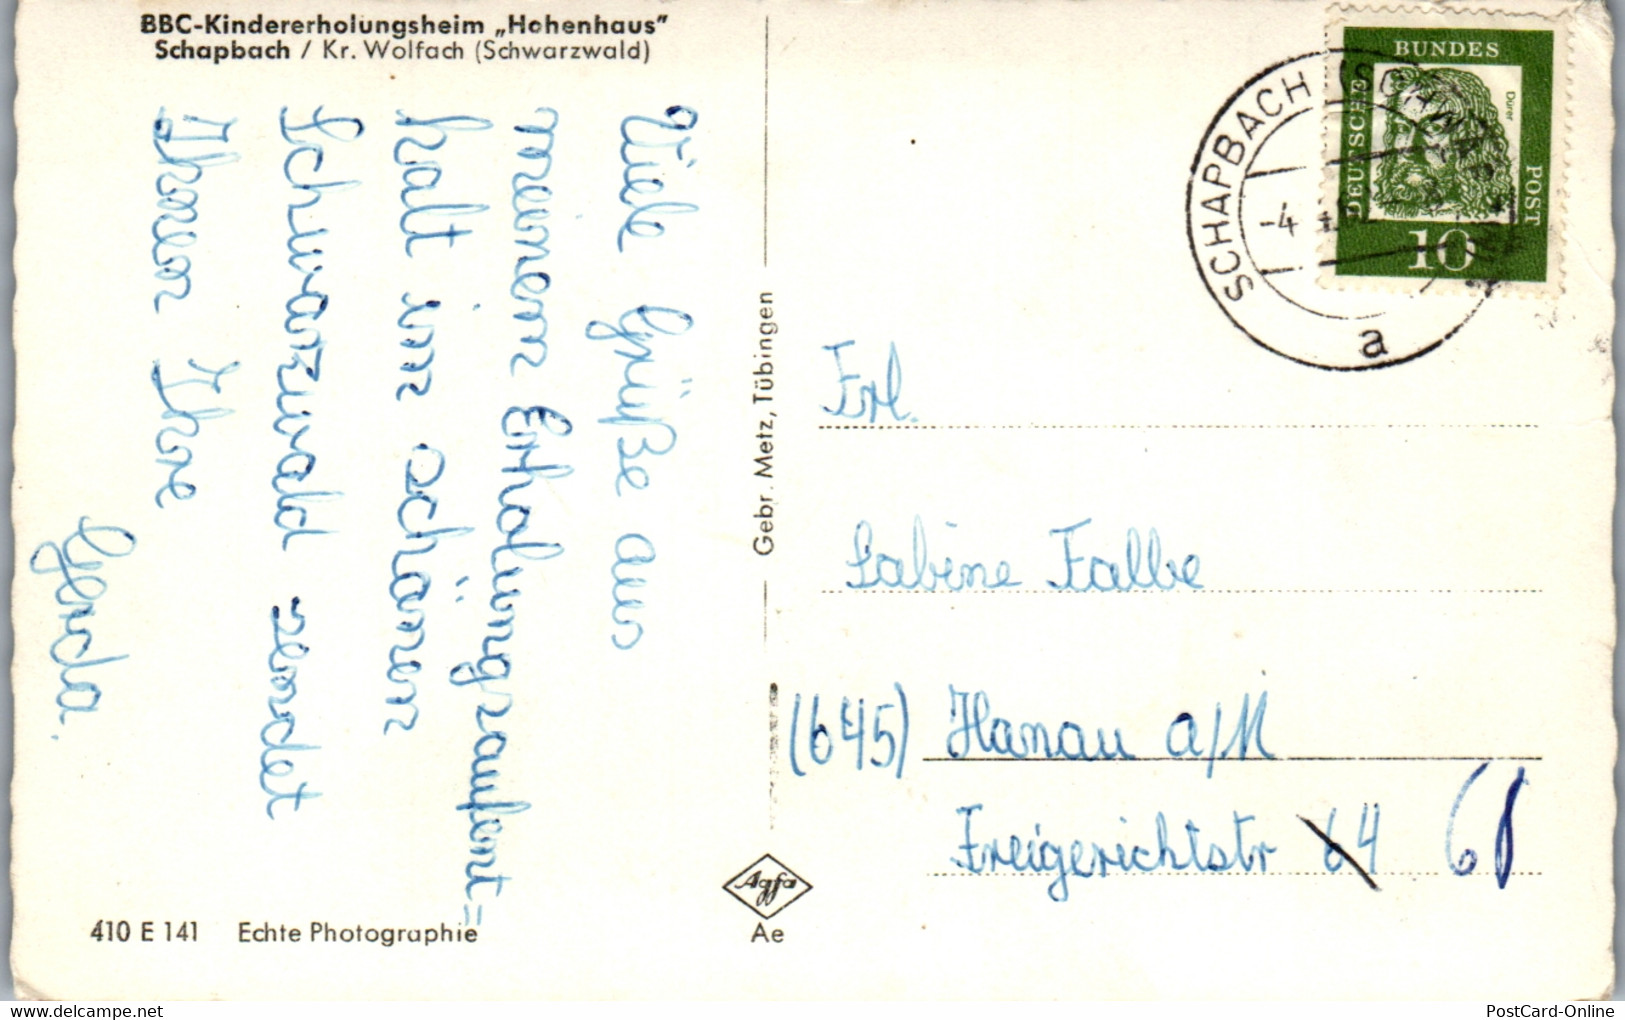 42108 - Deutschland - Schapbach , Kr. Wolfach , BBC Kindererholungsheim Hohenhaus - Gelaufen - Bad Rippoldsau - Schapbach